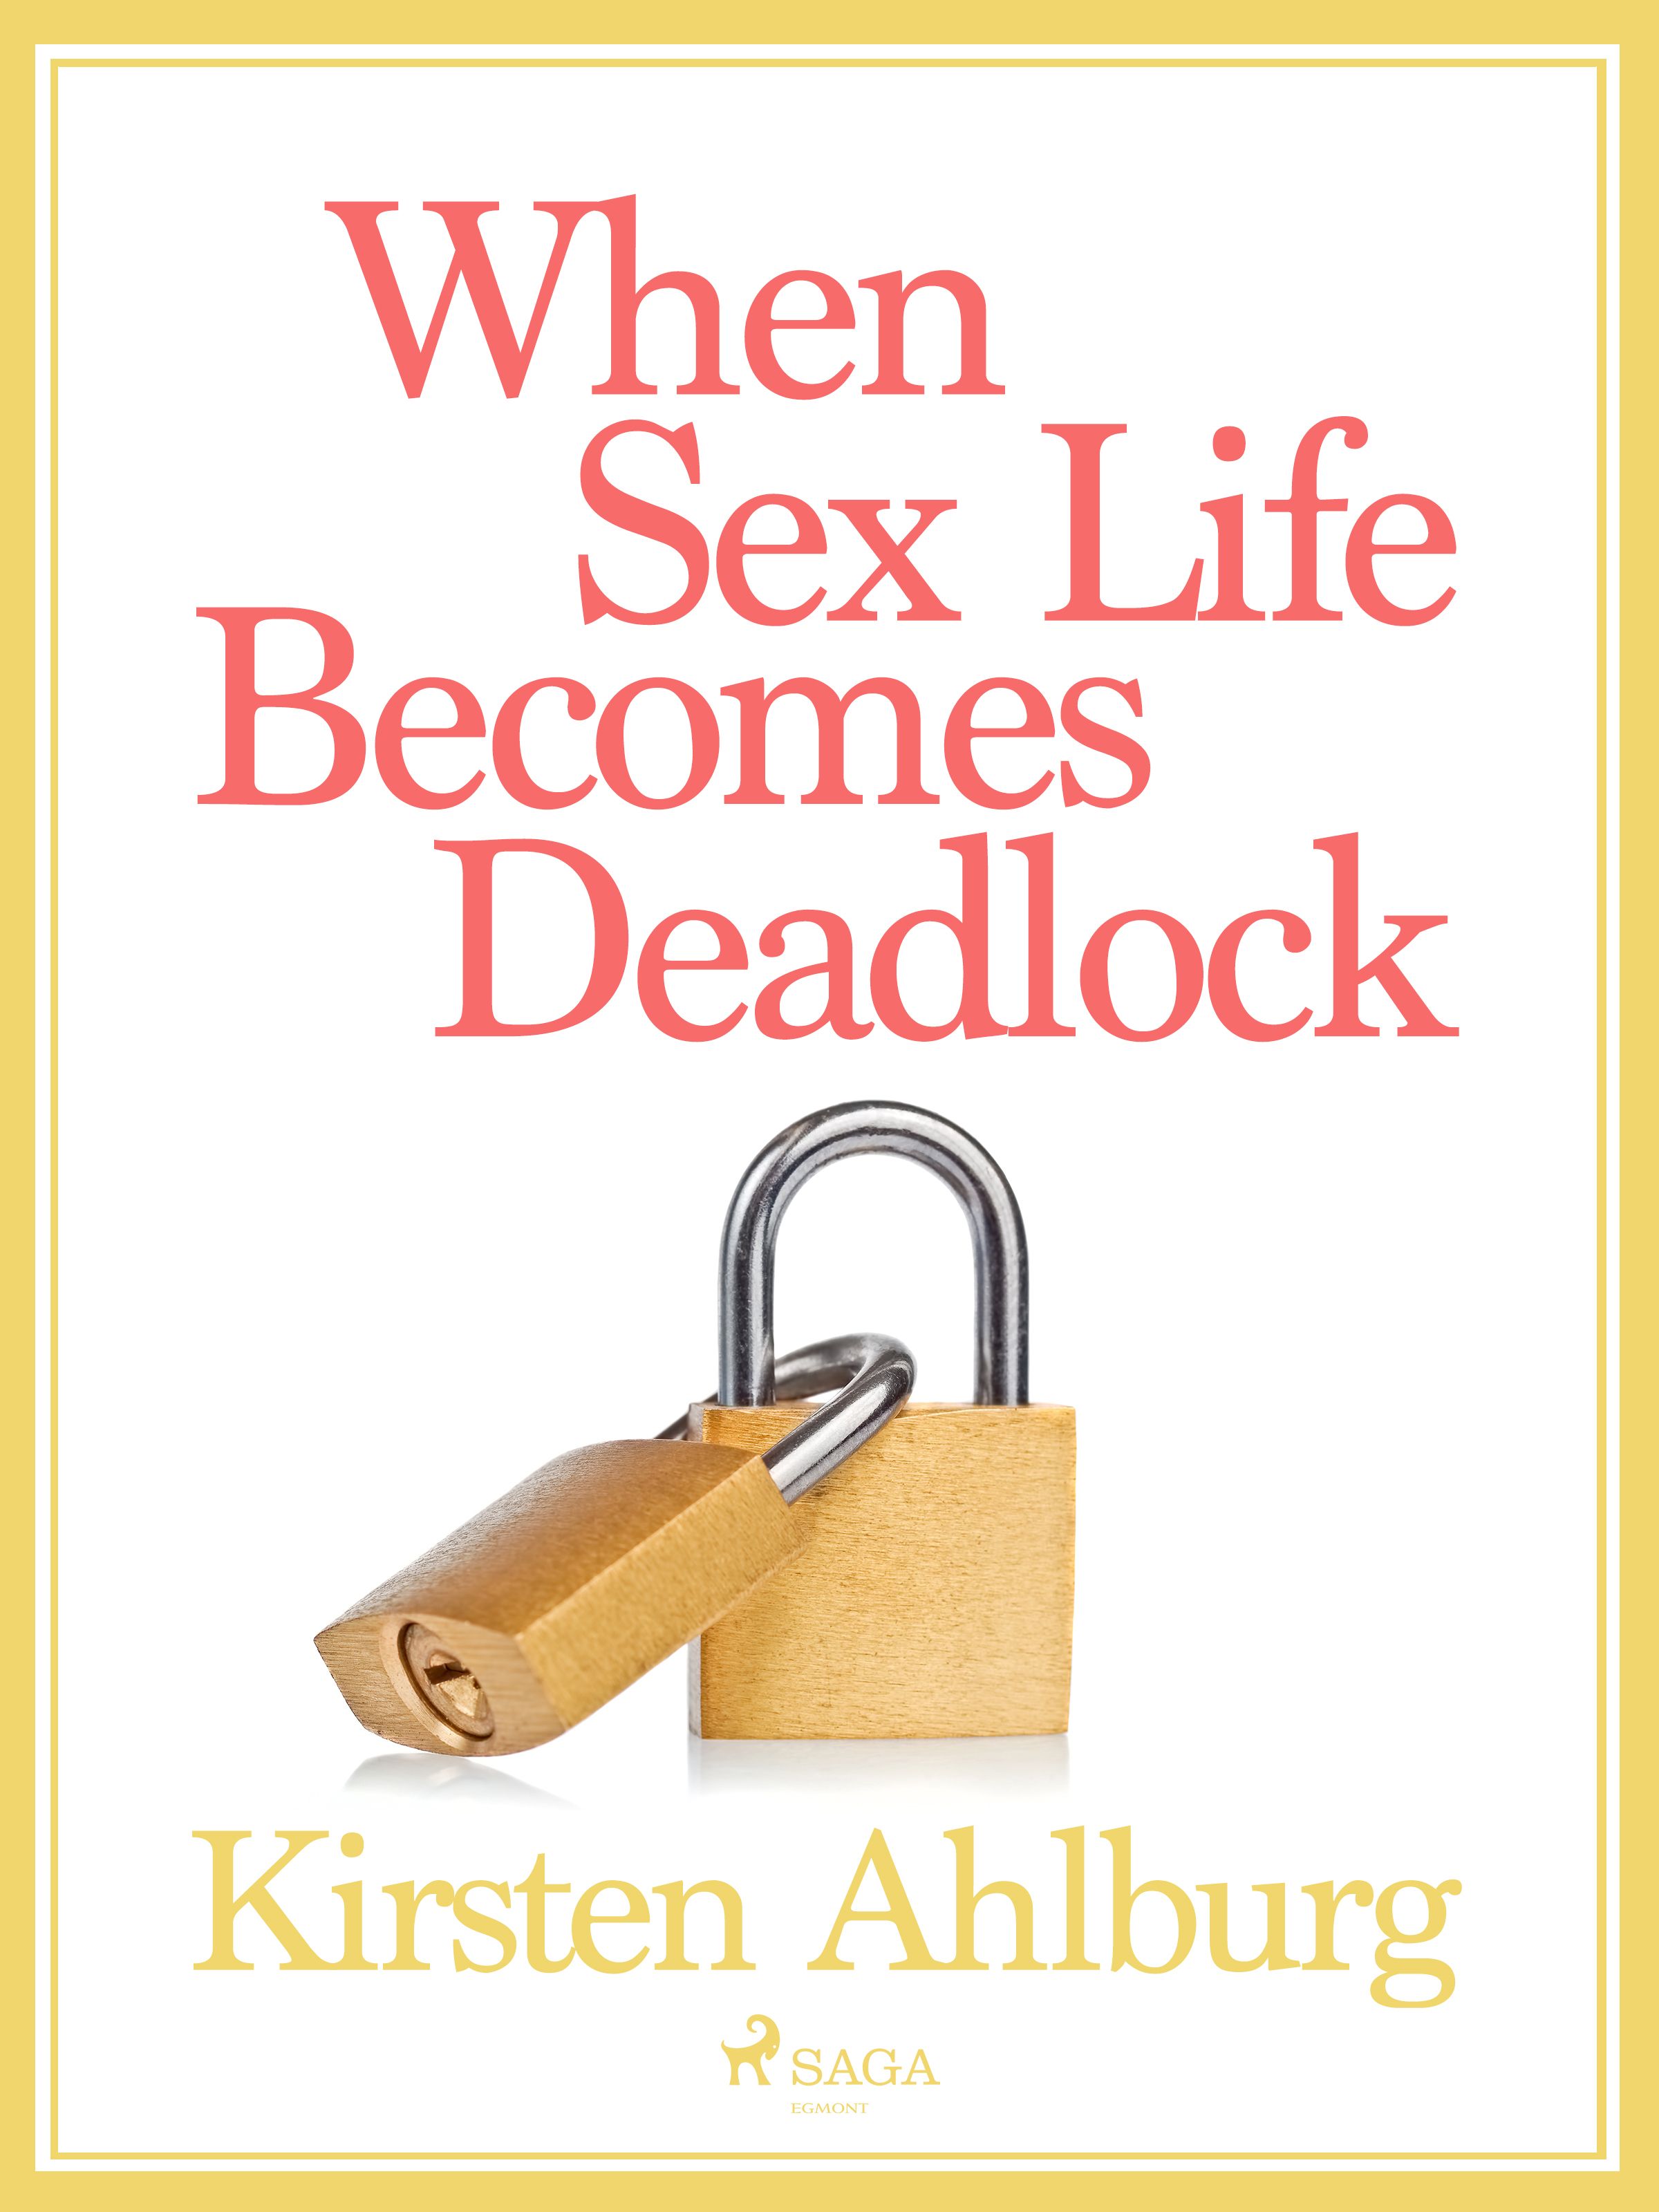 When Sex Life Becomes Deadlock, e-bog af Kirsten Ahlburg